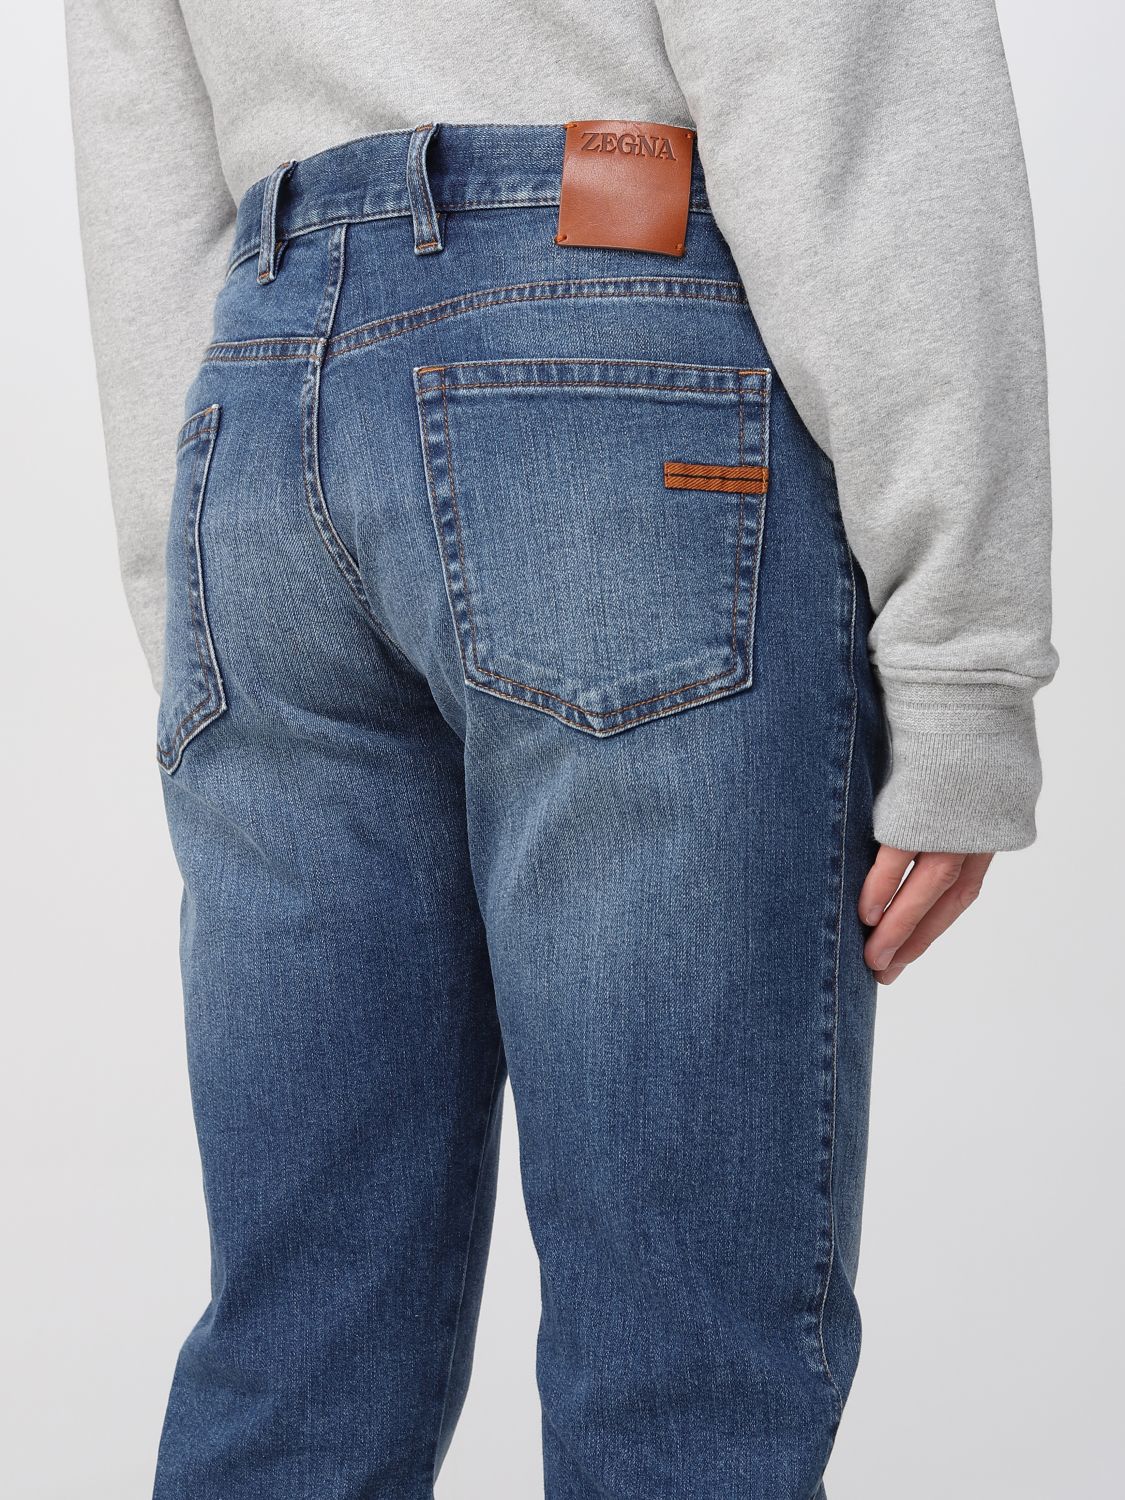 Jeans Zegna: Zegna jeans for men denim 5